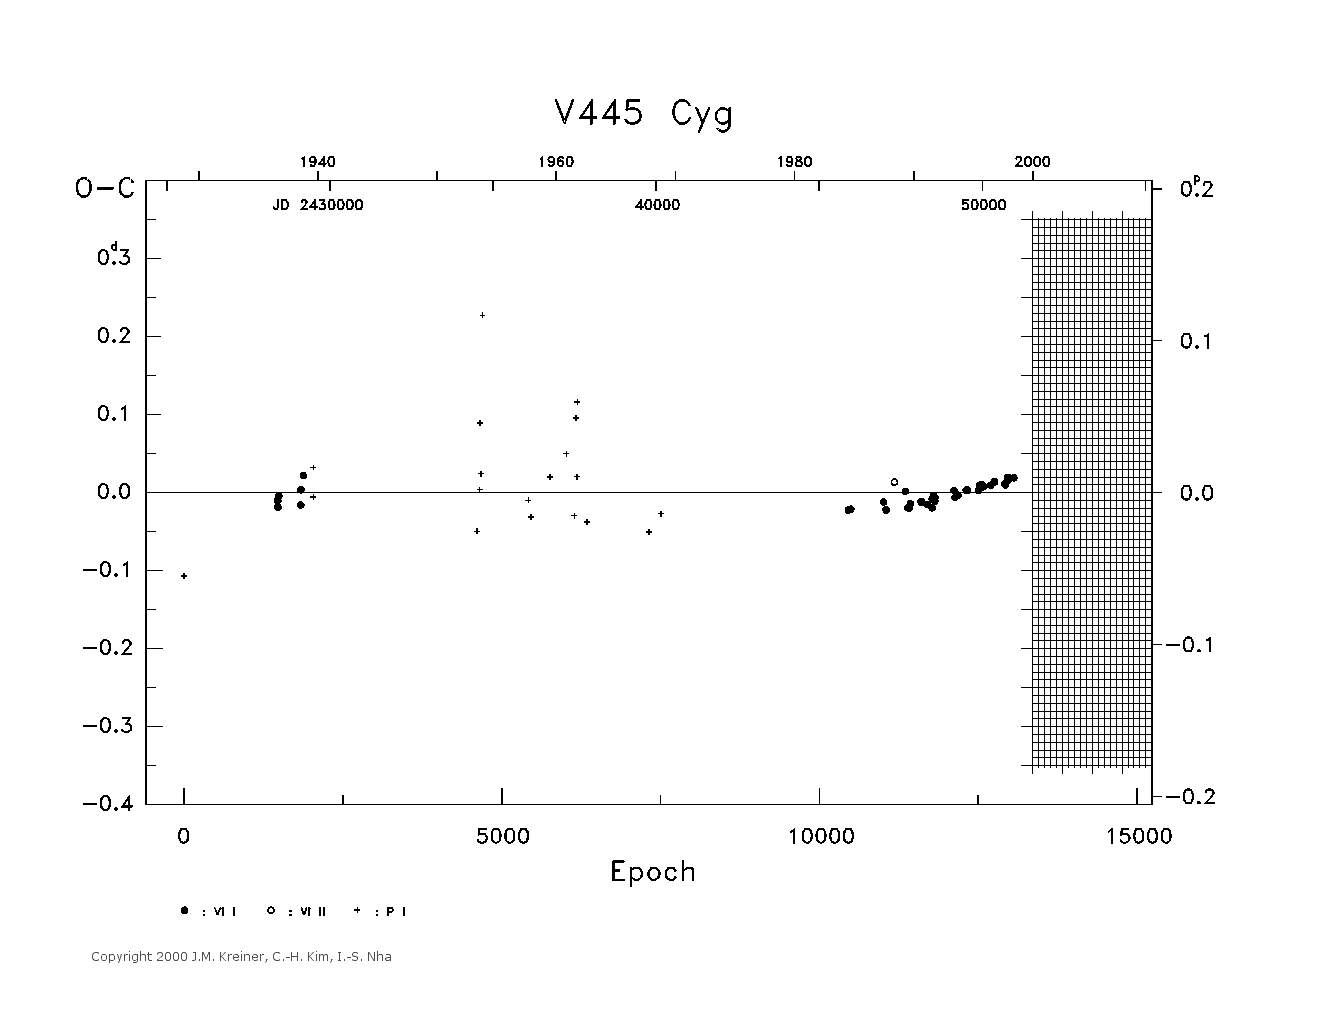 [IMAGE: large V445 CYG O-C diagram]